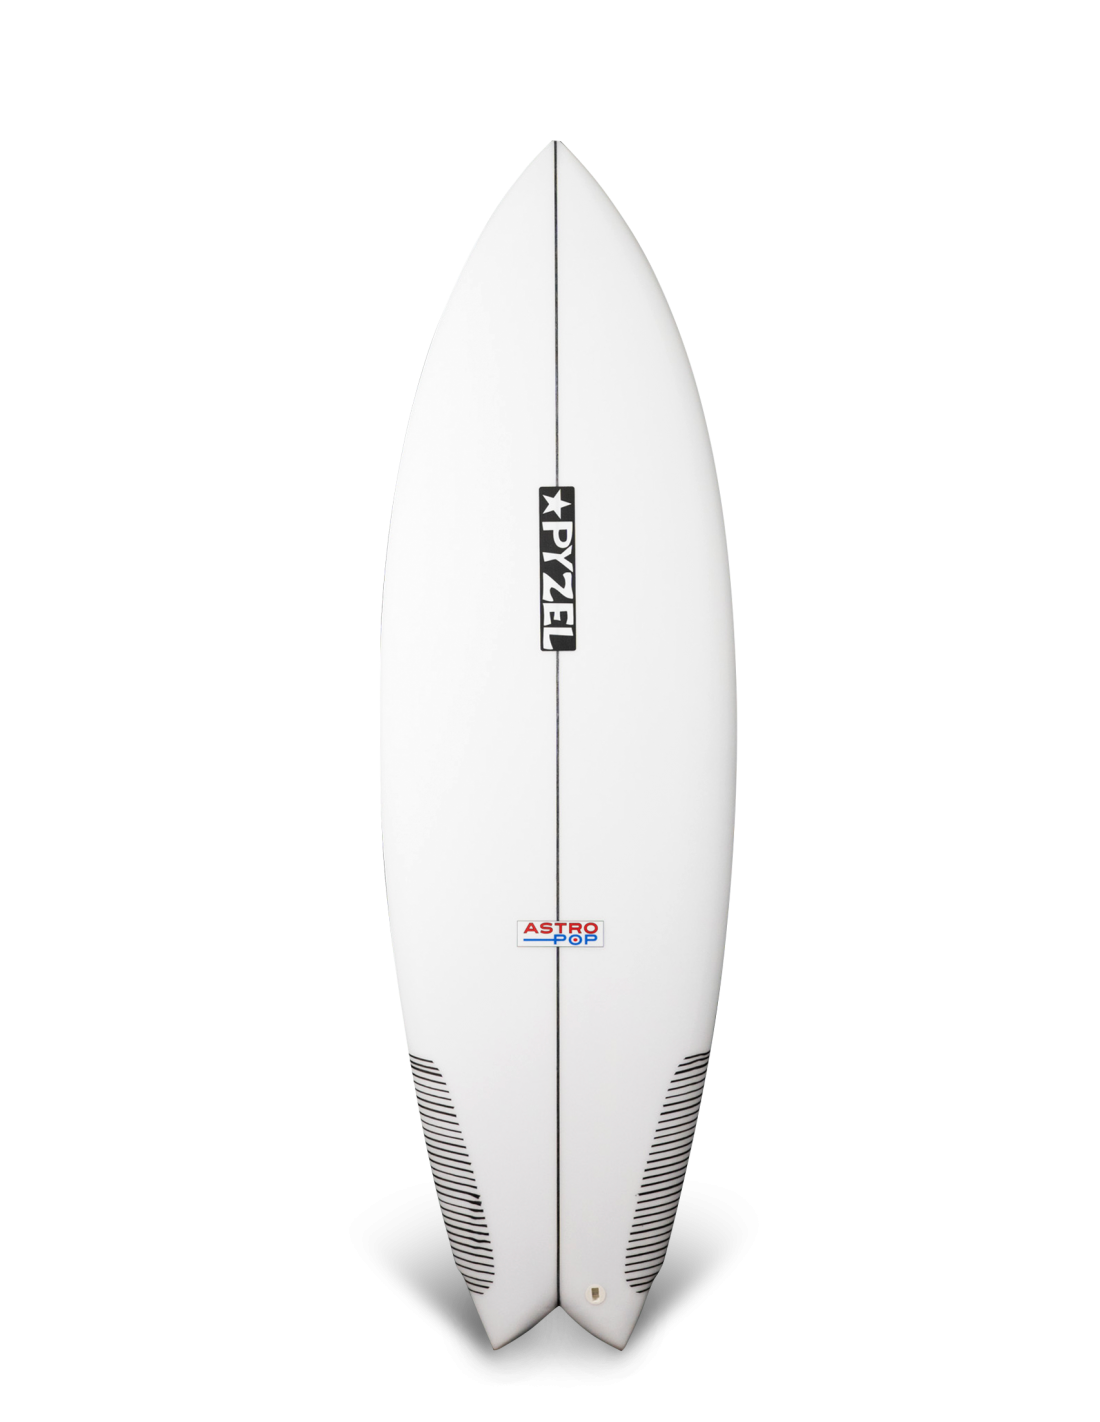 Planche de surf Pyzel Astro pop 5'8" PU FCS II  5 Fins  - 29,9L